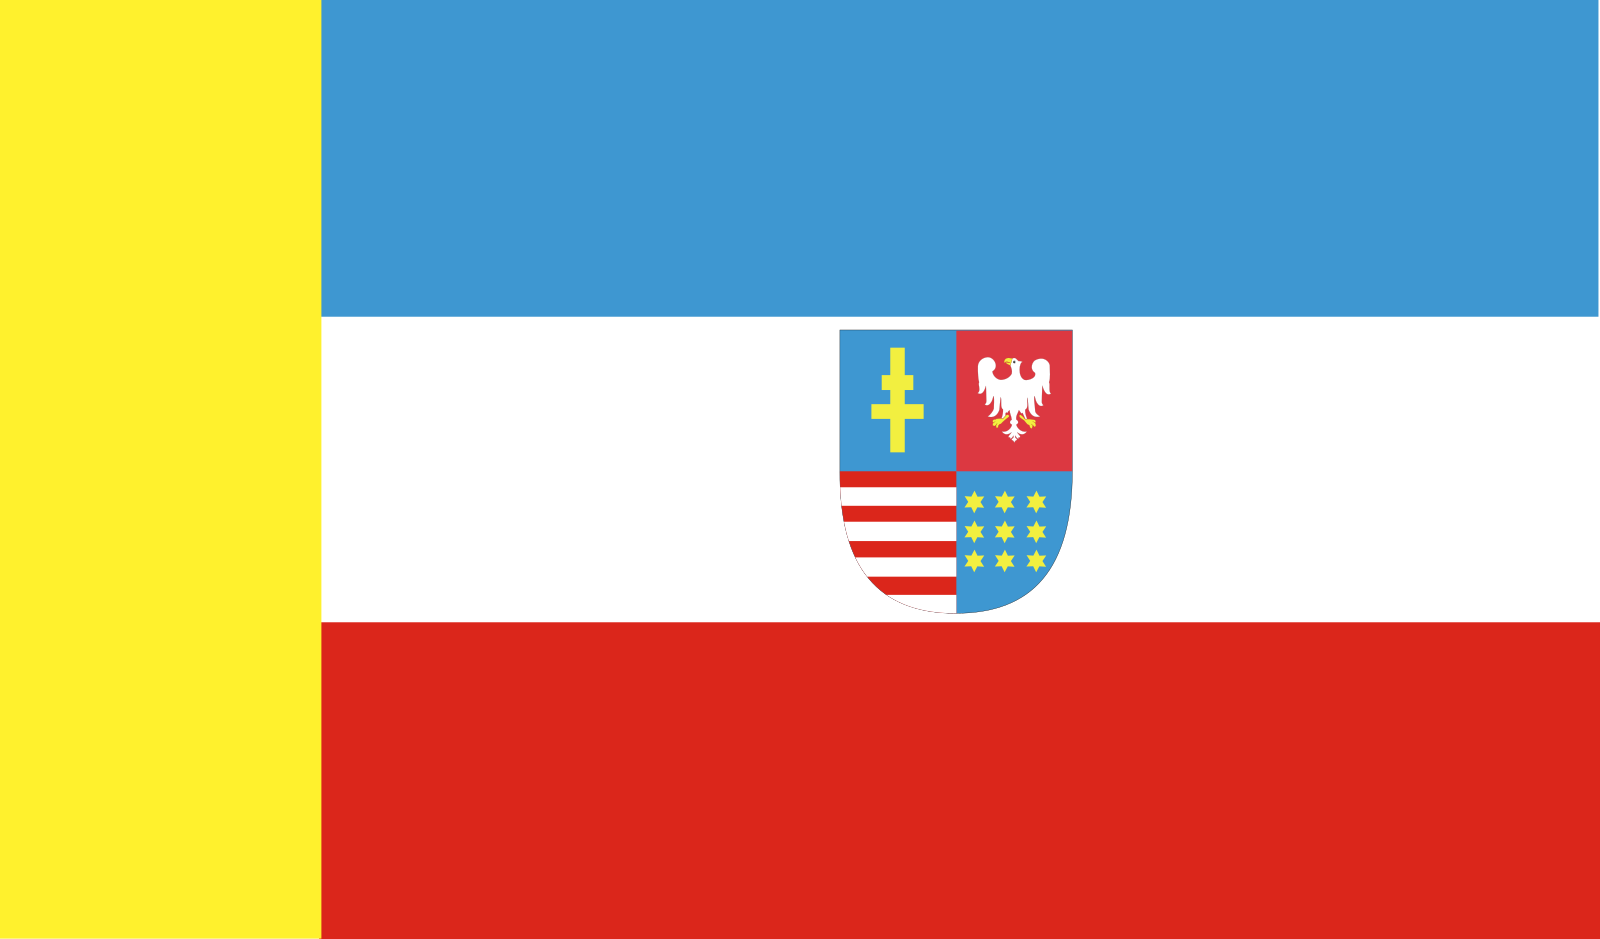 Svatokřížská vlajka | vlajka, prapor, symbol, vlaječka, obrázek | Polská vojvodství |  1600x939 px